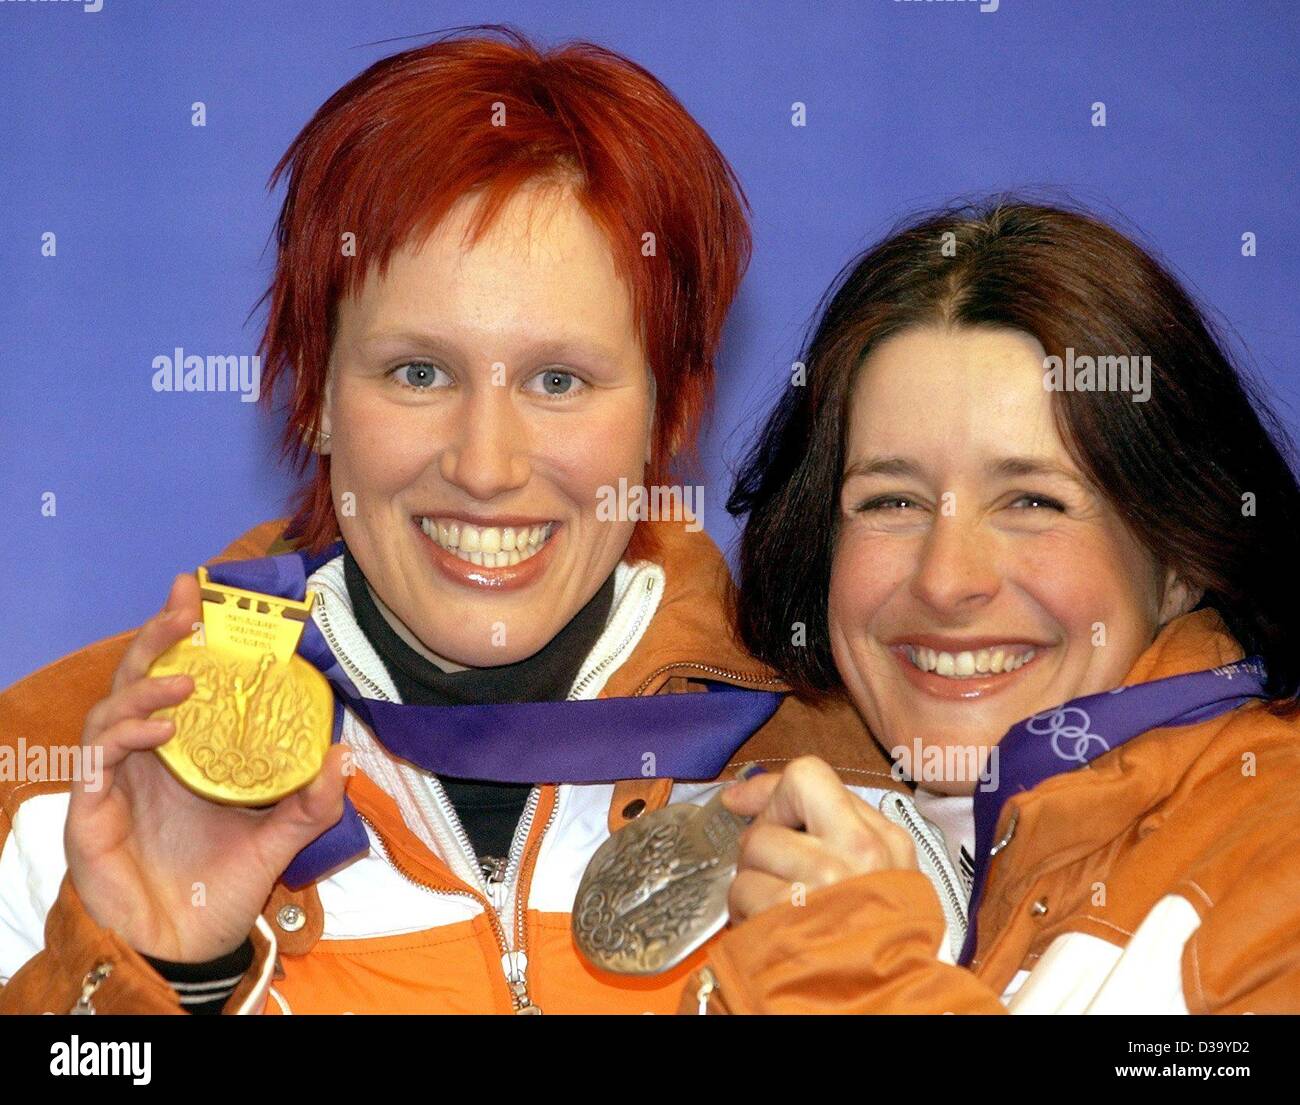 (Dpa) - XIX edizione dei Giochi Olimpici Invernali: Kati Wilhelm (l) mostra la sua medaglia d'oro, il suo compagno di squadra Uschi Disl la sua medaglia d'argento a seguito della cerimonia di premiazione in Salt Lake City, 13.2.2002. Hanno vinto i 7,5 km del biathlon. Foto Stock